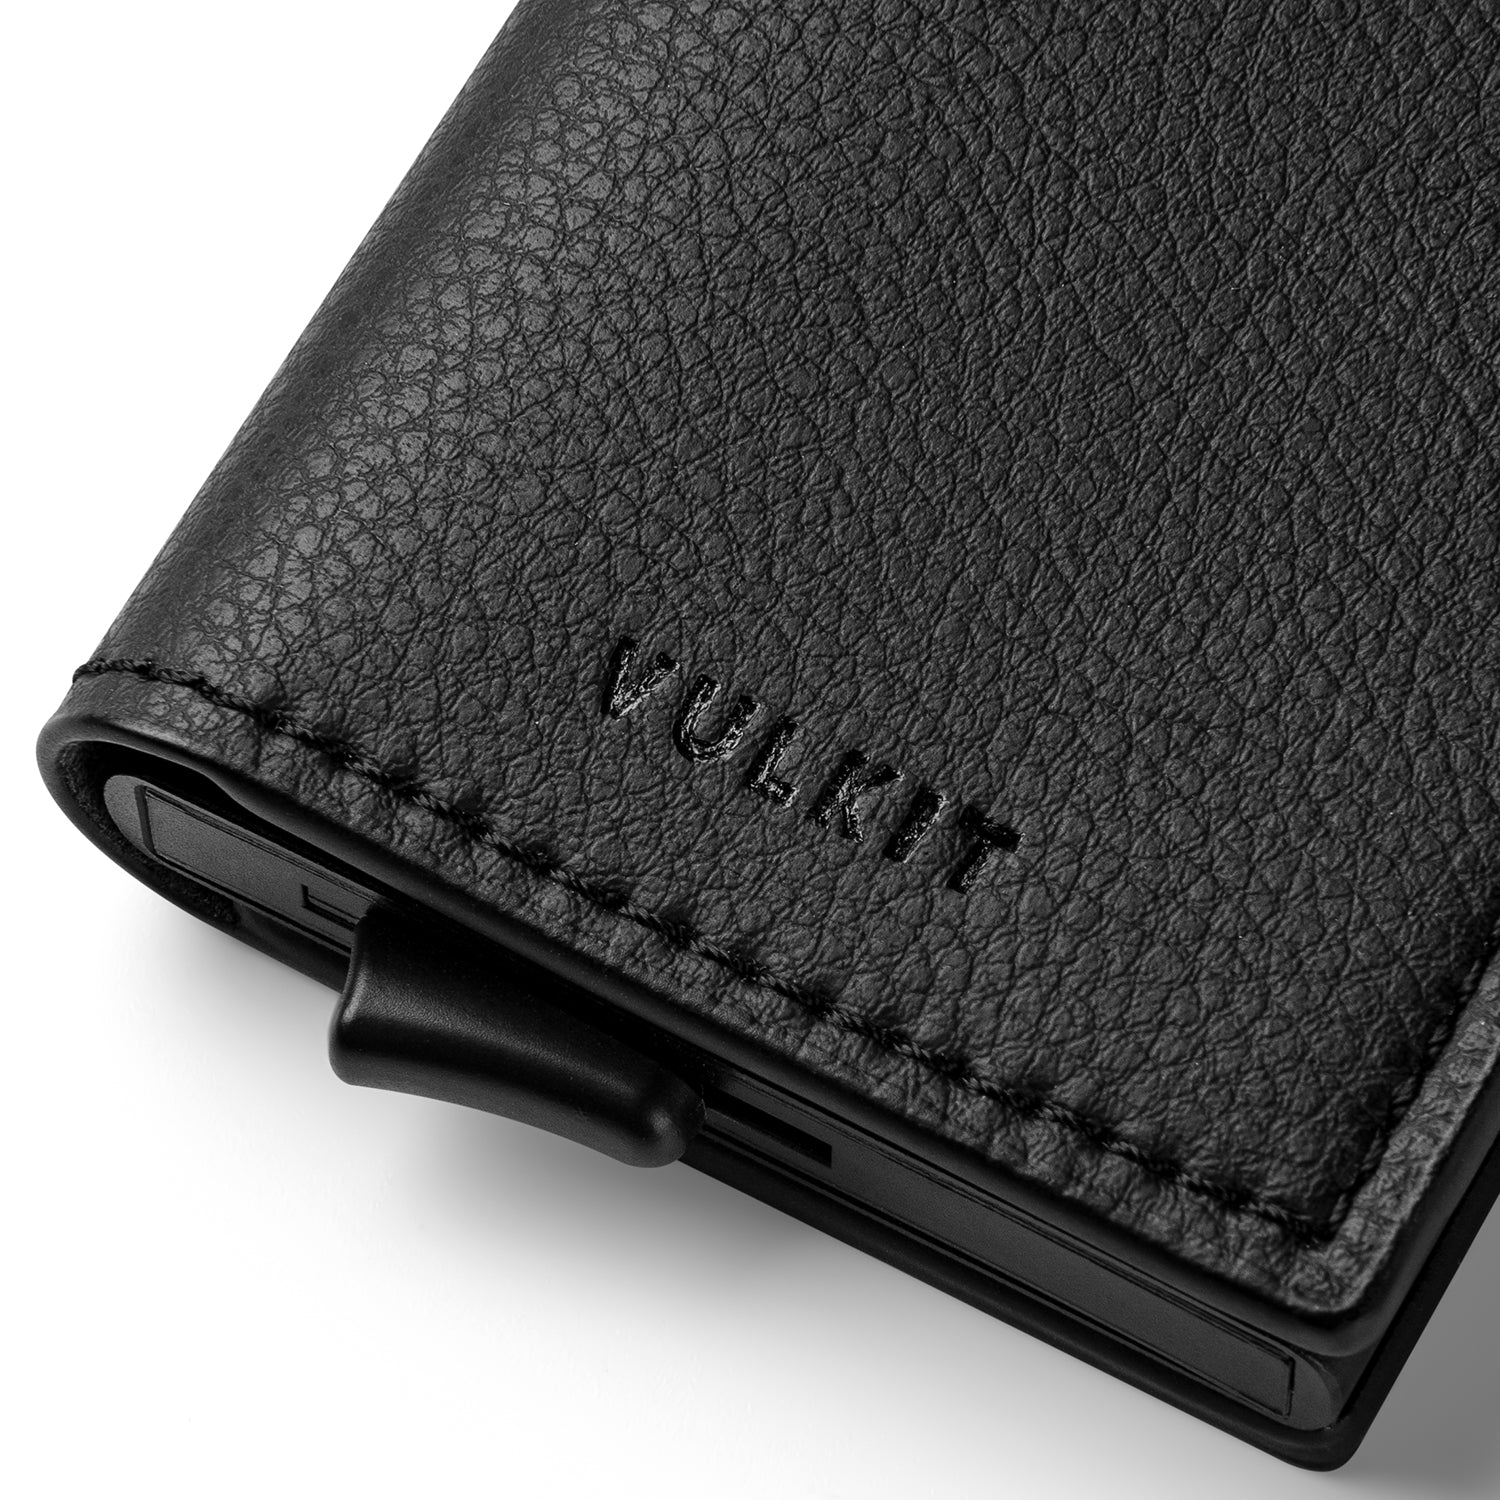 VULKIT Men's 2-in-1 Leather Wallet